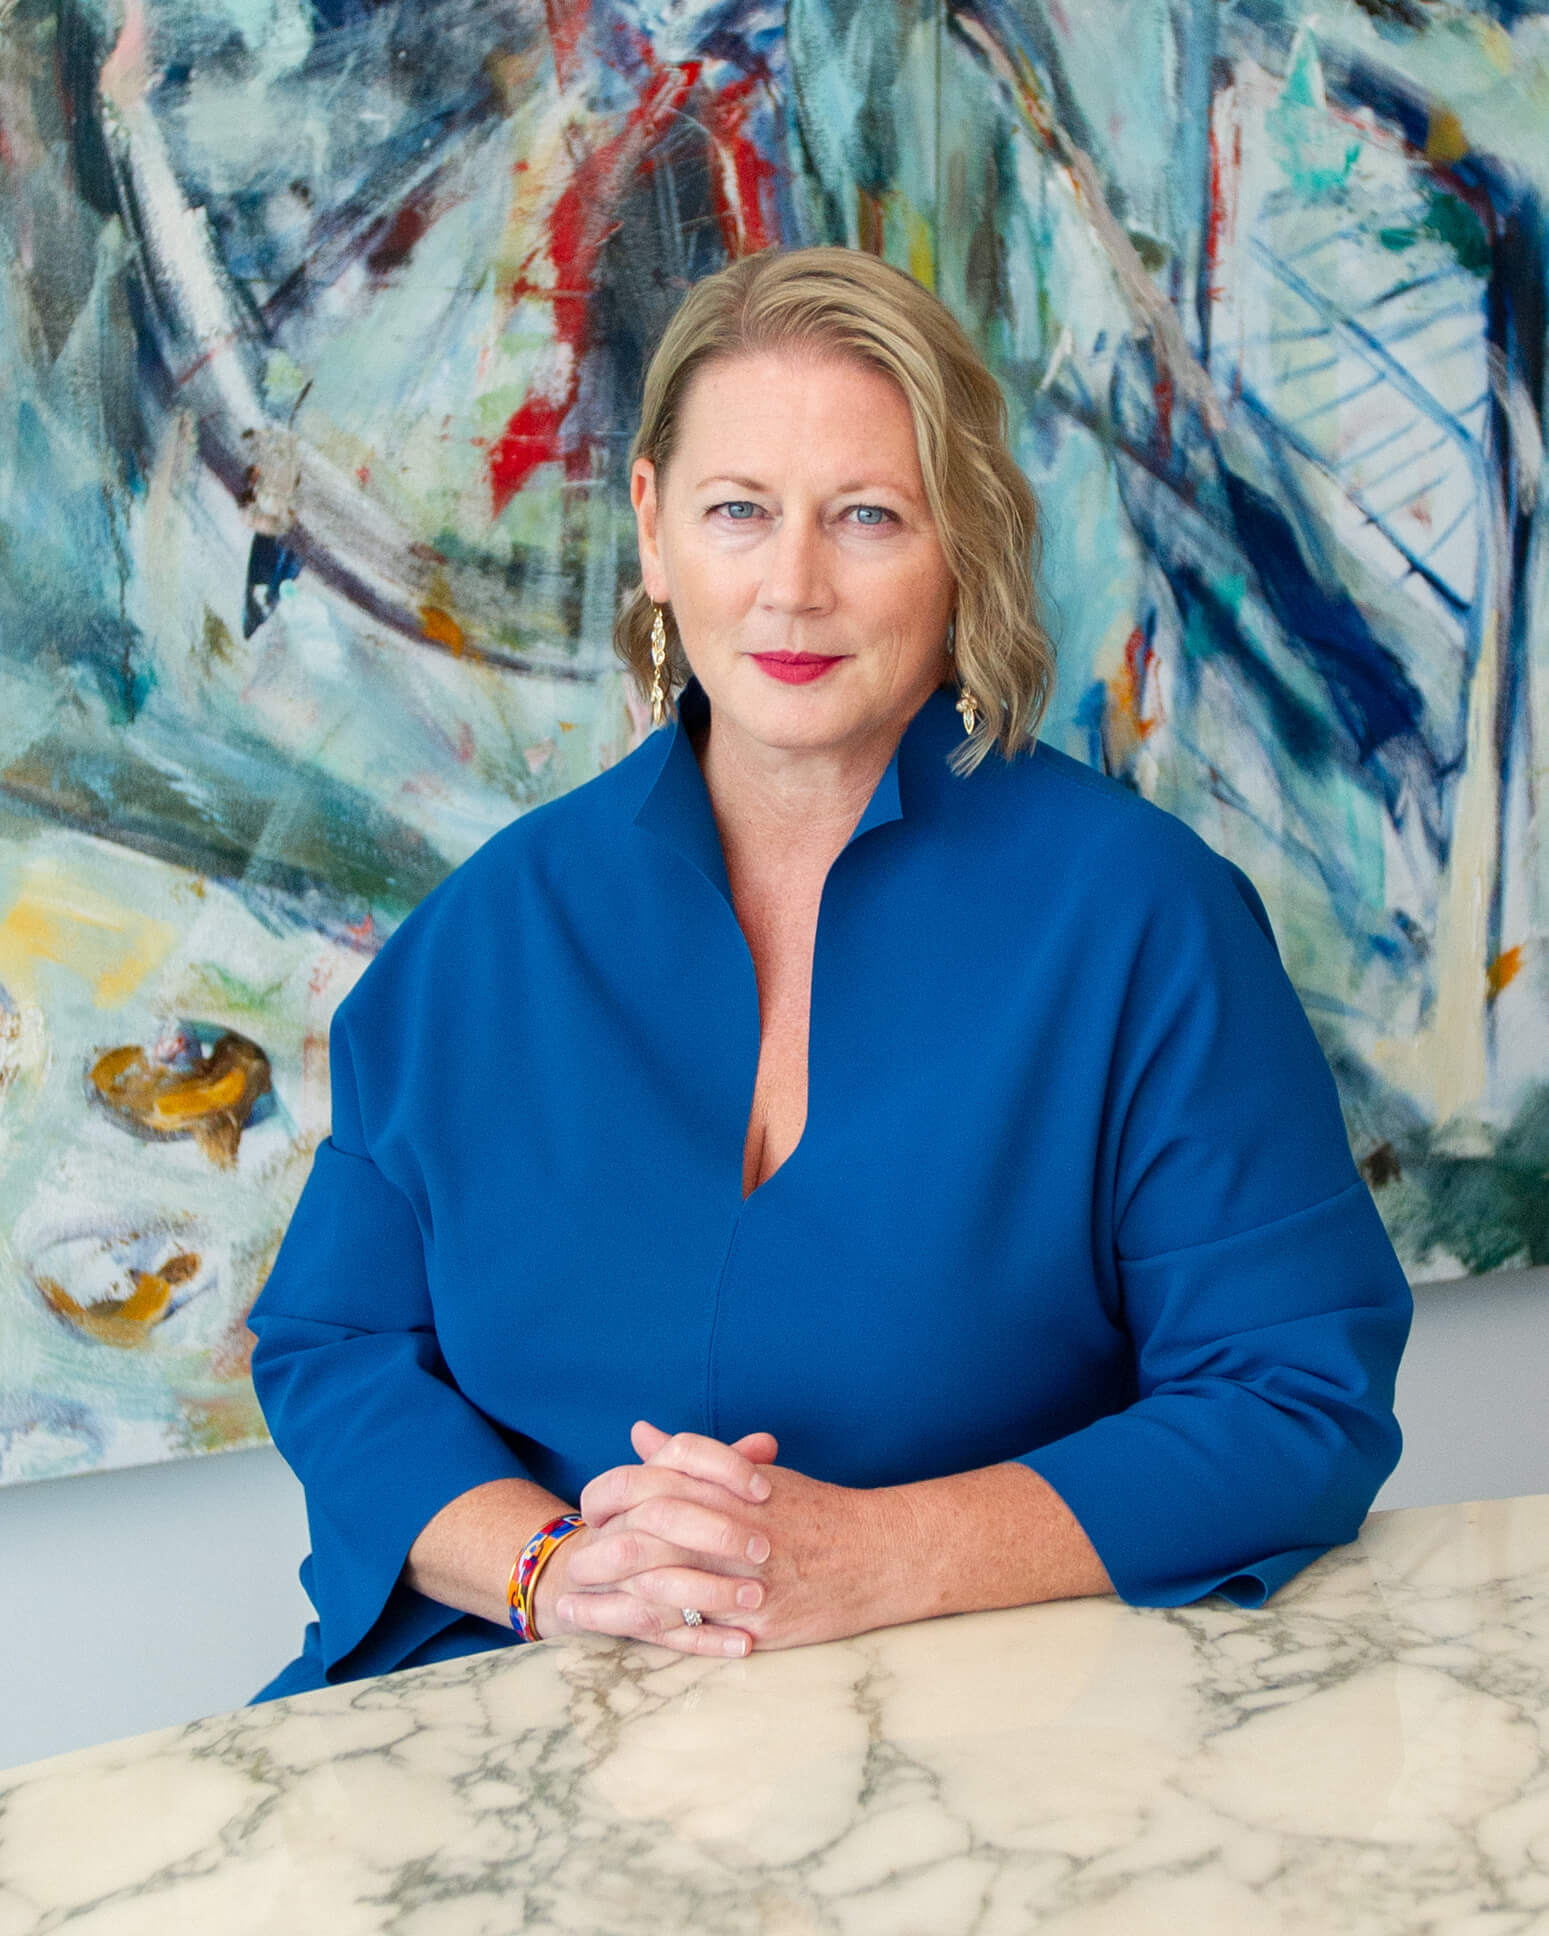 Fotografia do Diretor Executivo Virginia Devlin. Tem cabelo louro à altura dos ombros, olhos azuis e veste um top azul. Está sentada em frente a uma parede com um padrão brilhante.